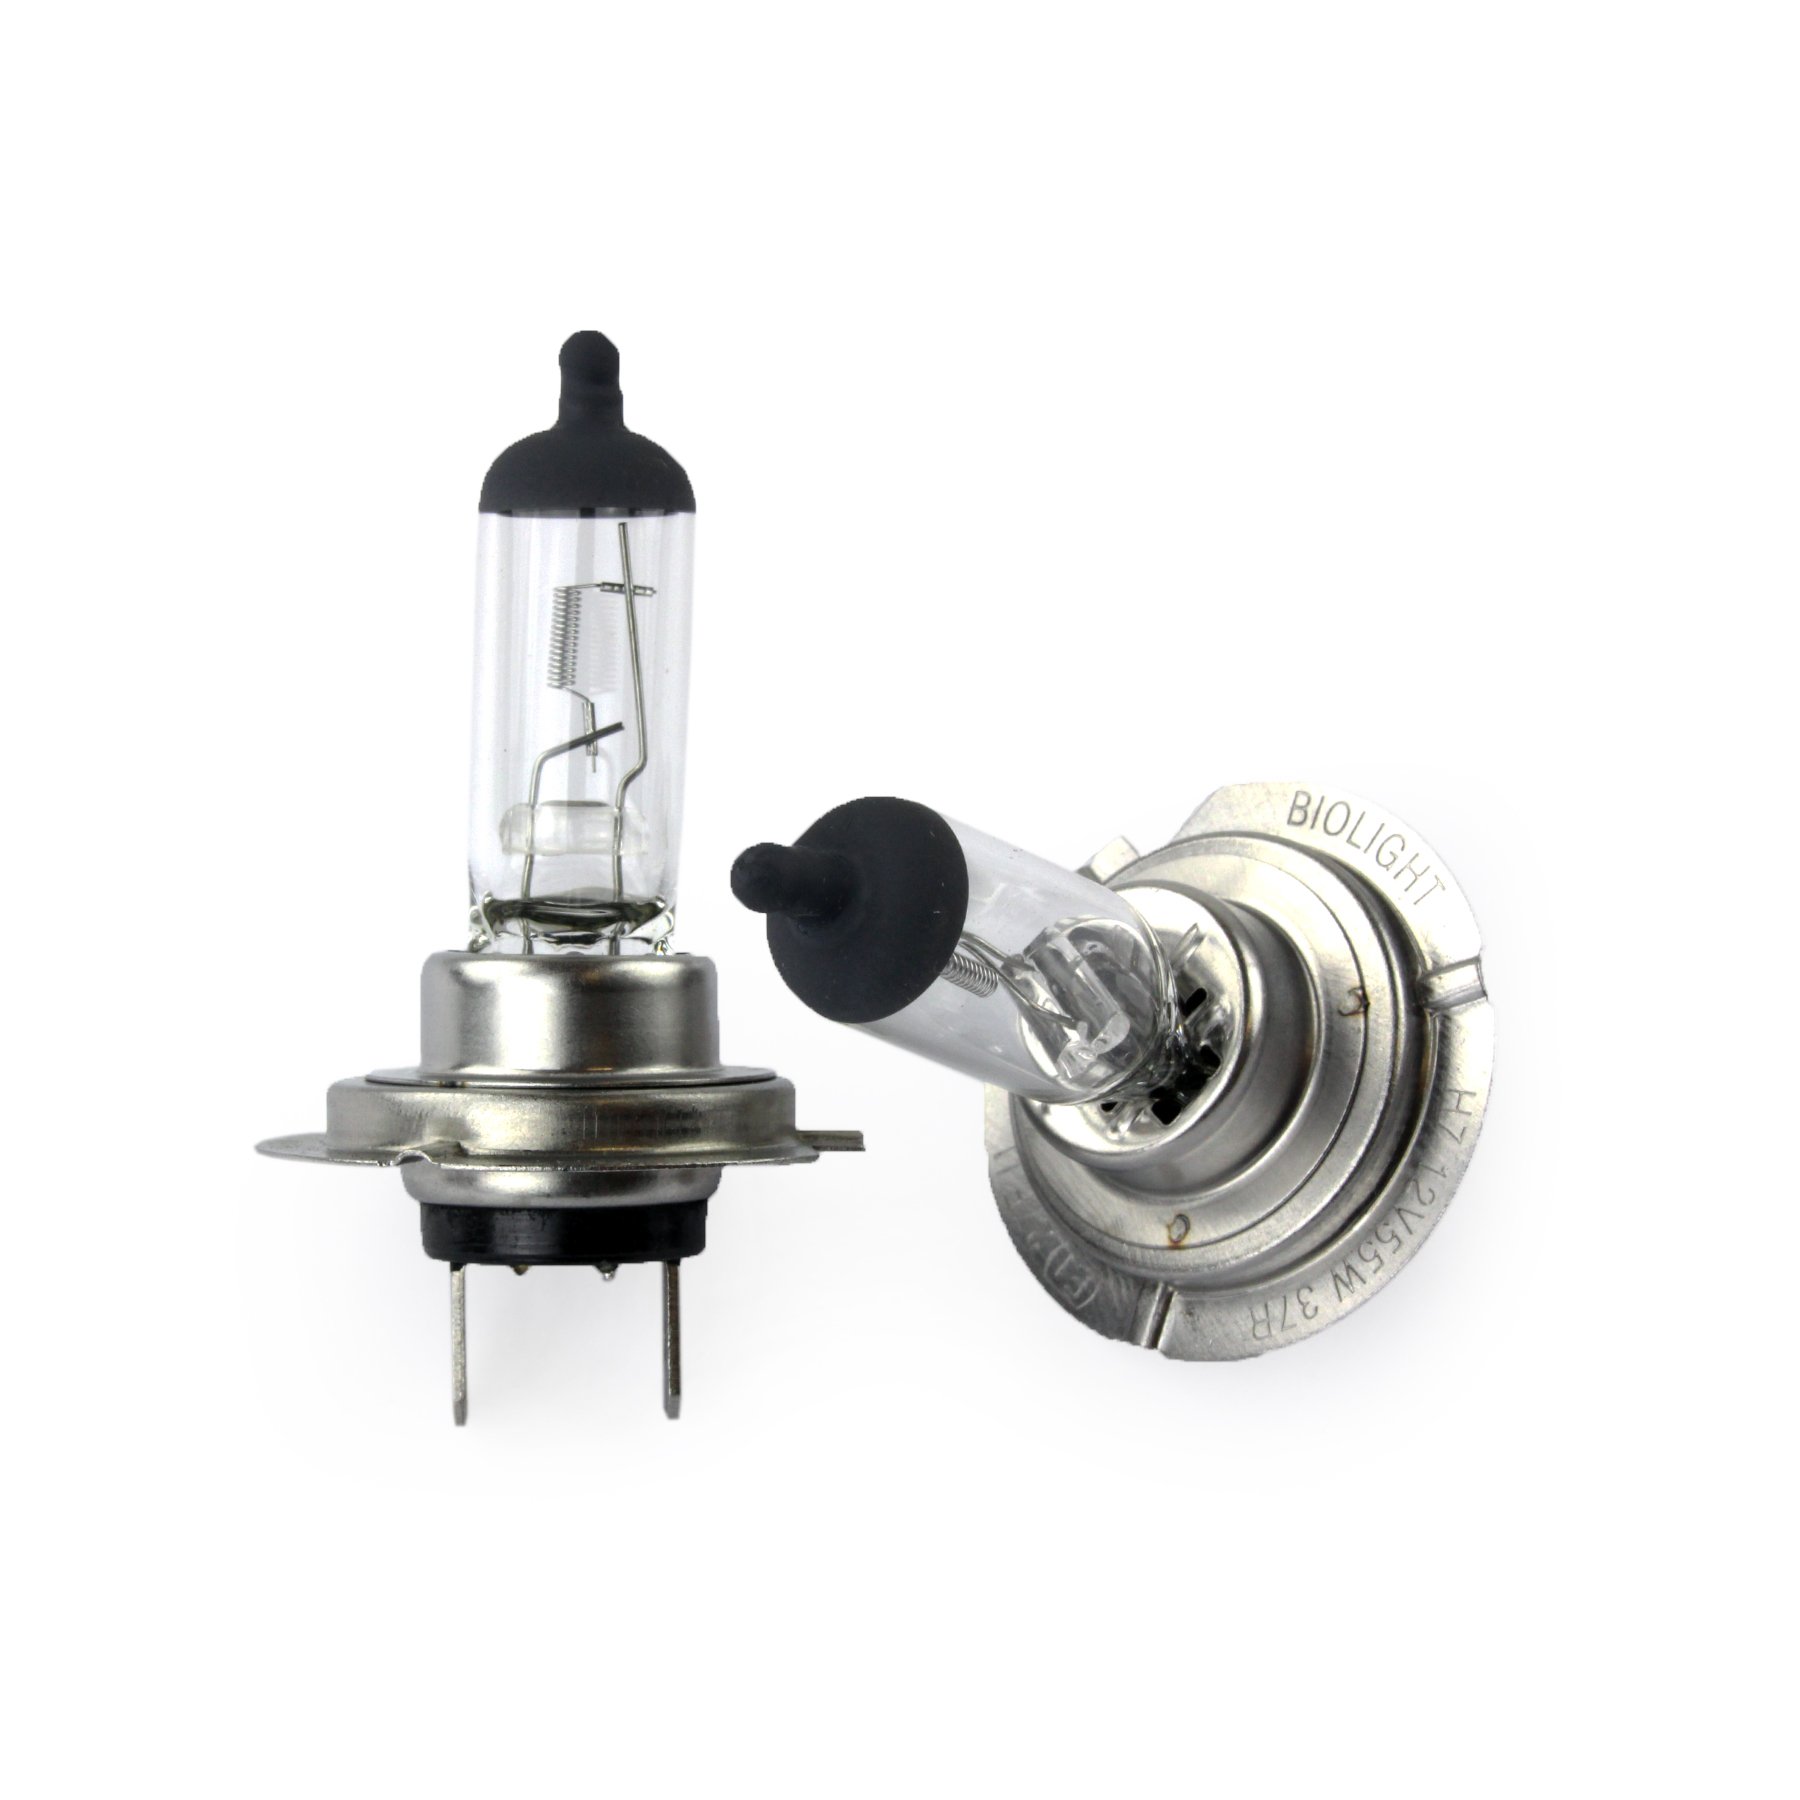 WERKSTATTWARE Jurmann Trade GmbH® 2x Stück Halogen Lampen Glassockel Birnen Autolampen (2x H7 55W Grey/Top) von JURMANN